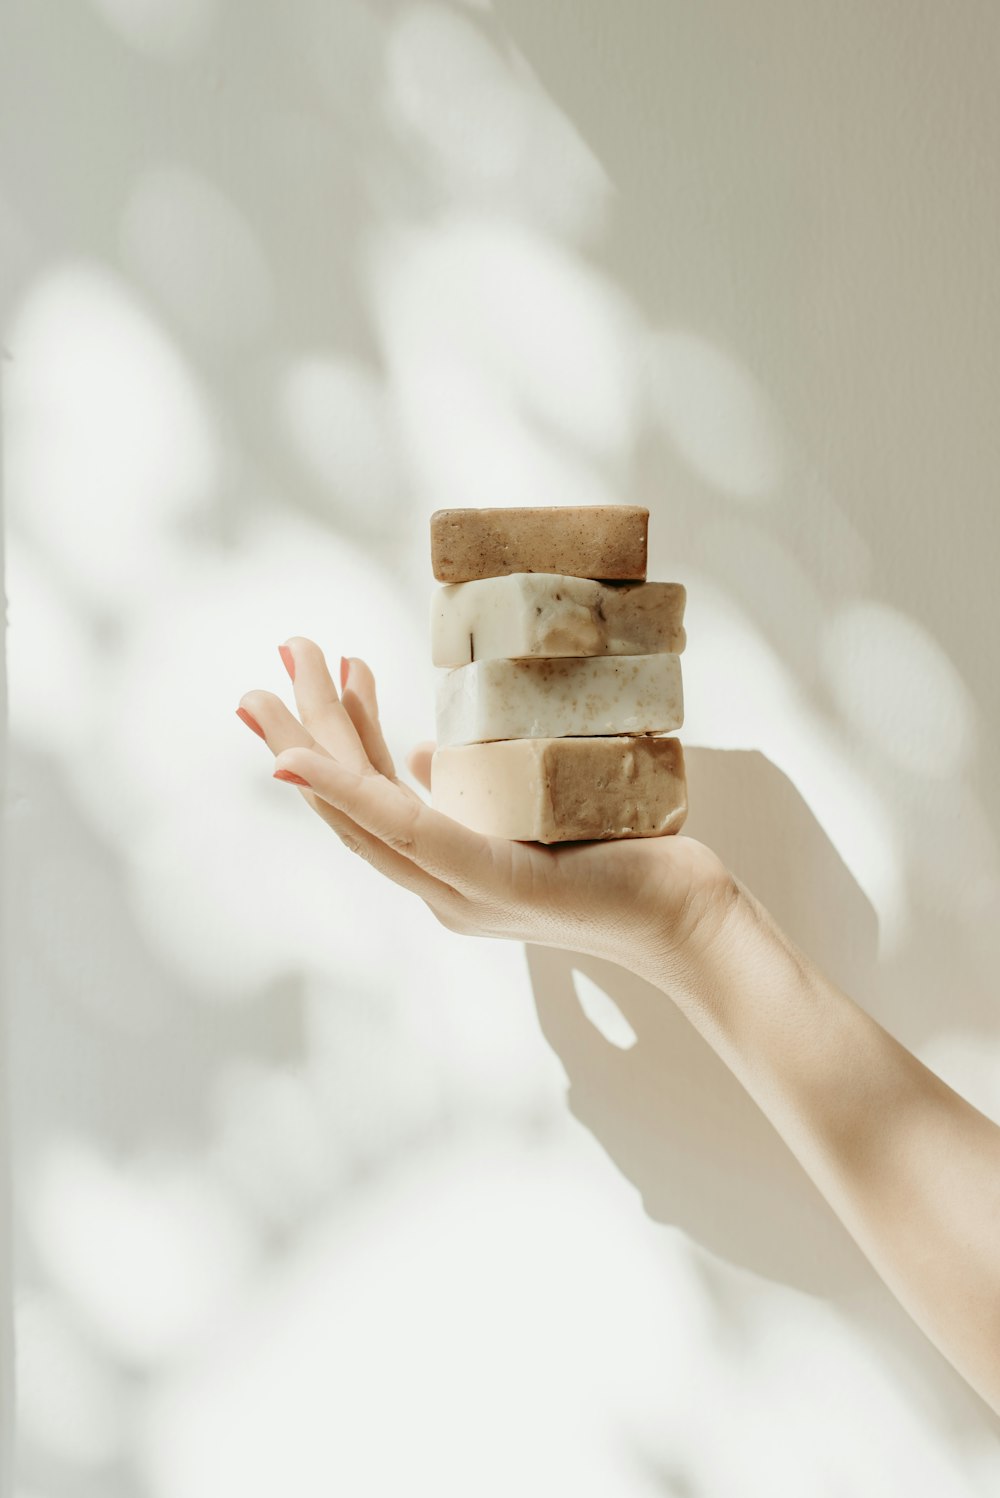 La mano de una mujer sosteniendo una pila de pastillas de jabón